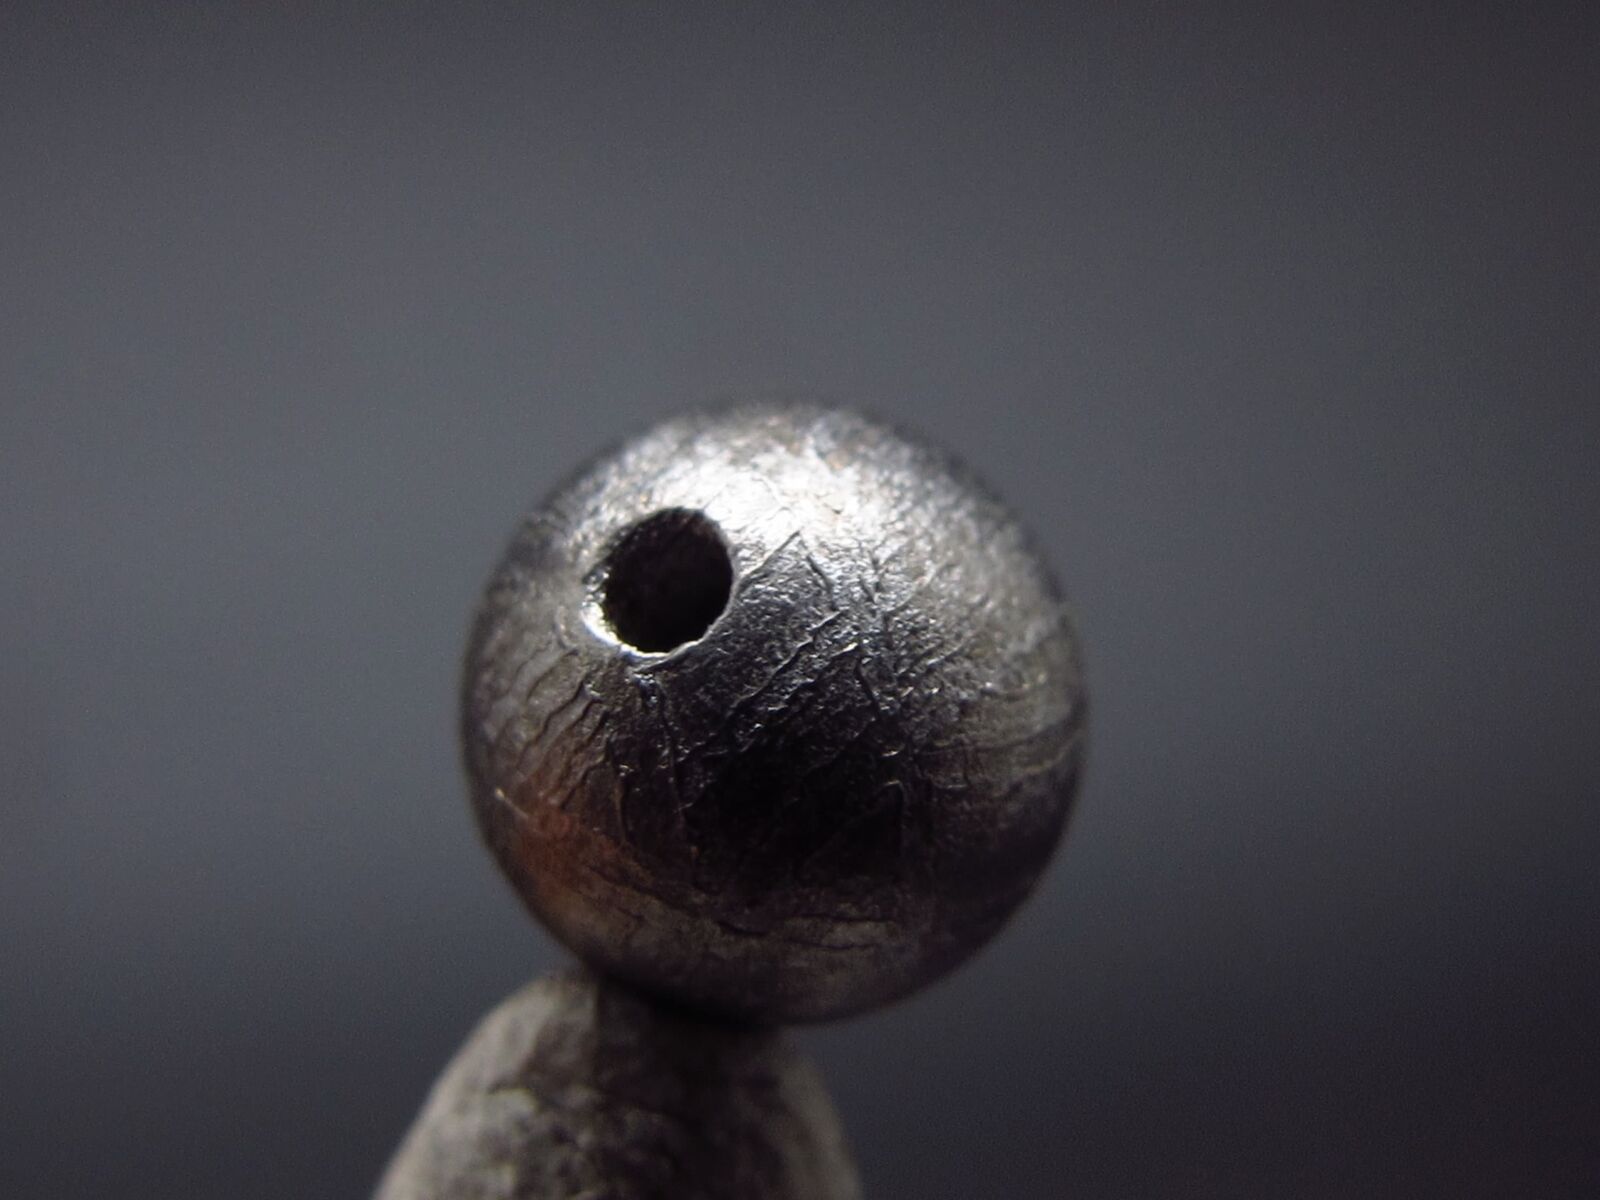 Muonionalusta Meteorite 6mm Round Bead from Sweden